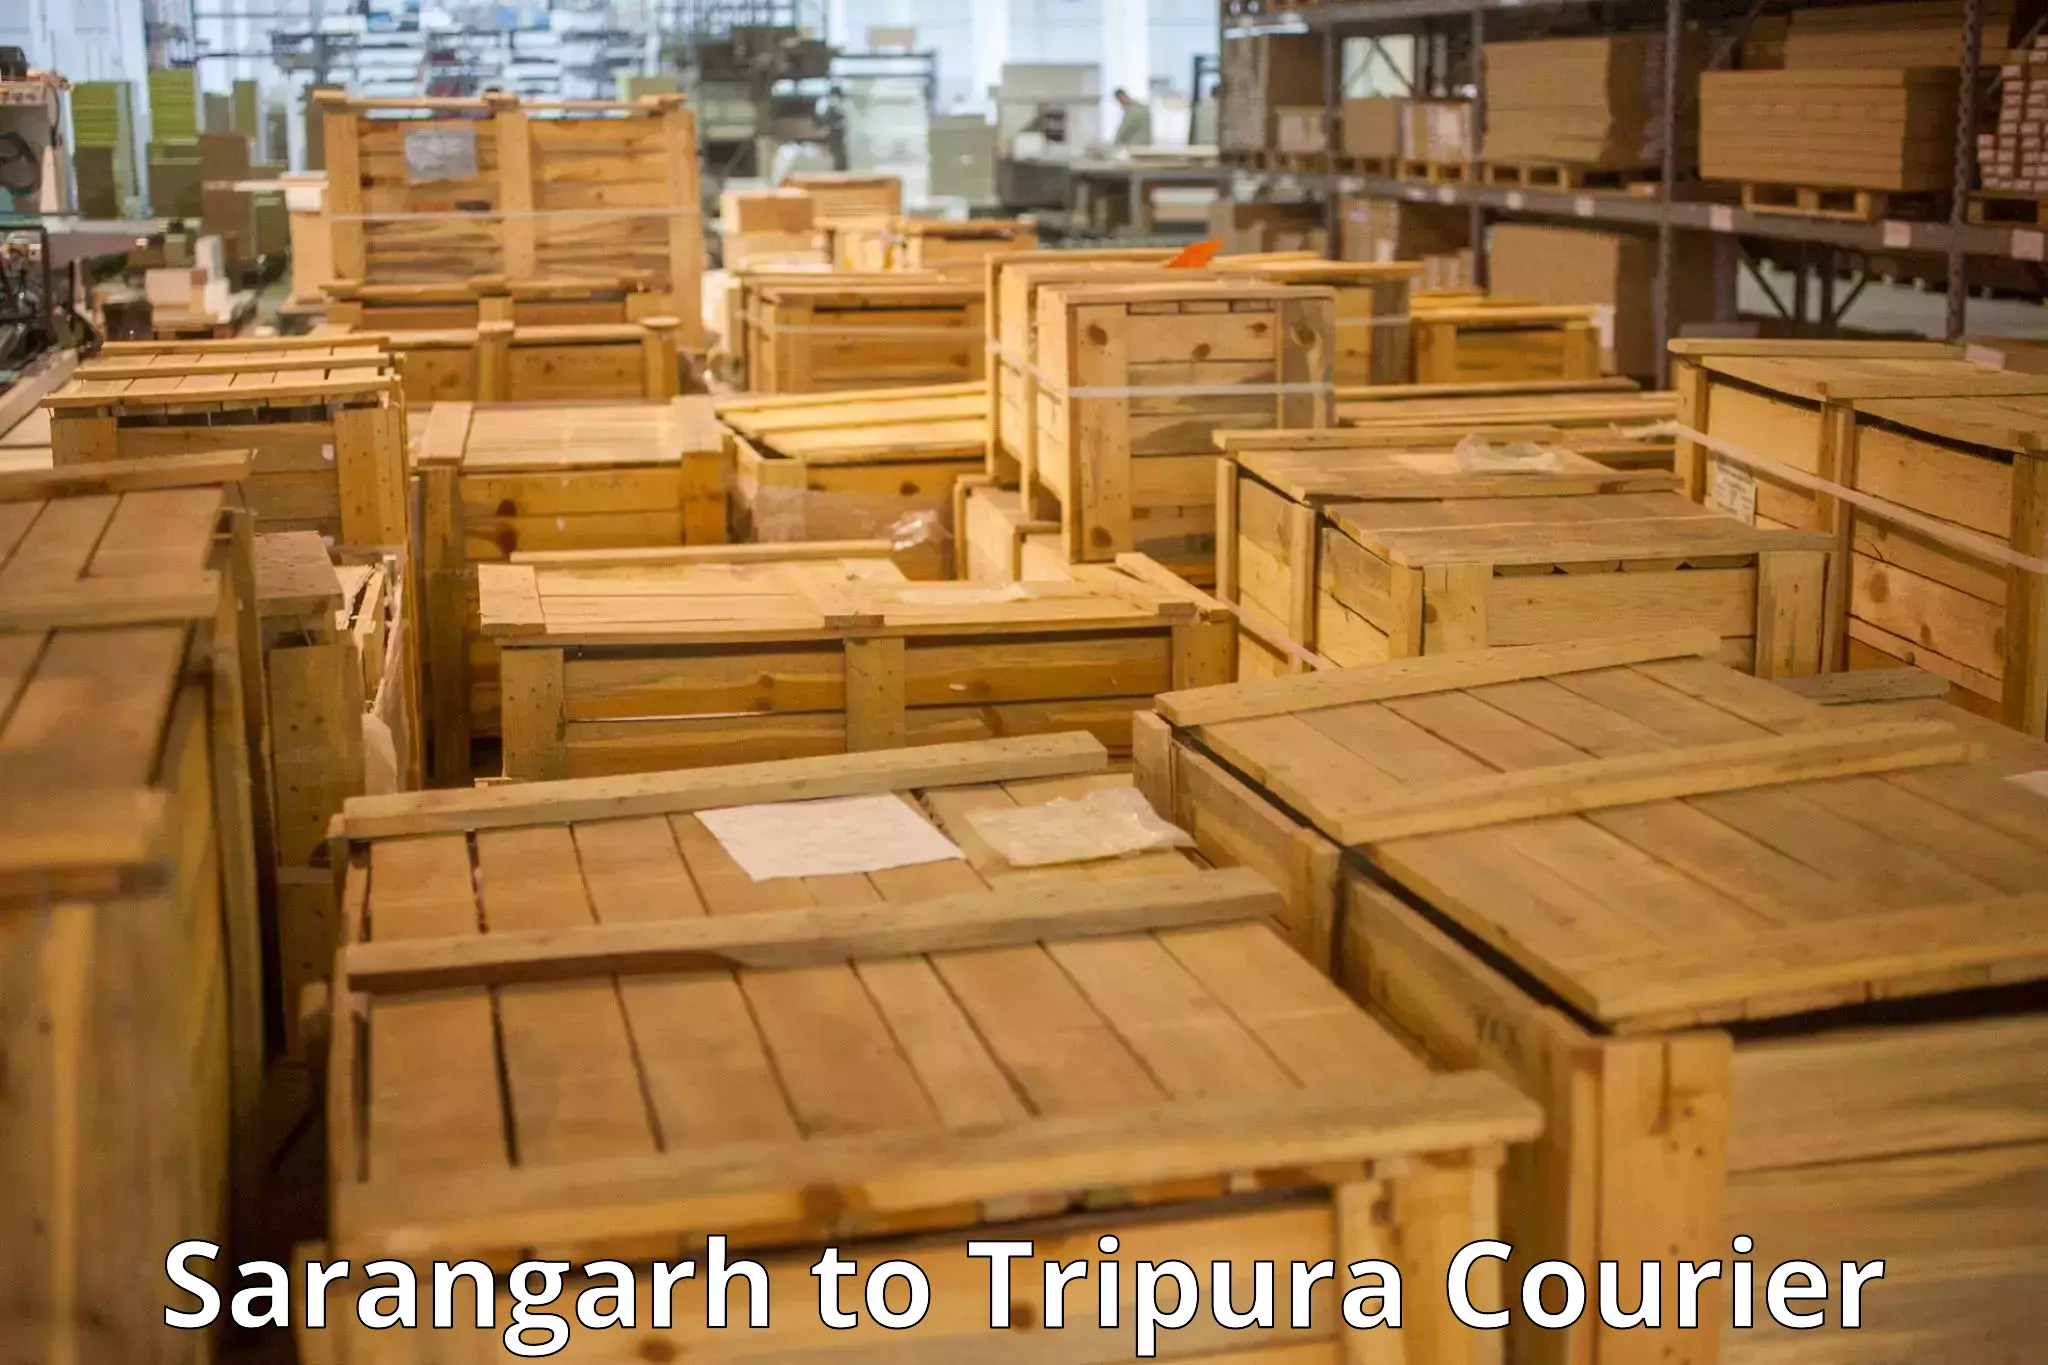 Baggage transport scheduler Sarangarh to Tripura